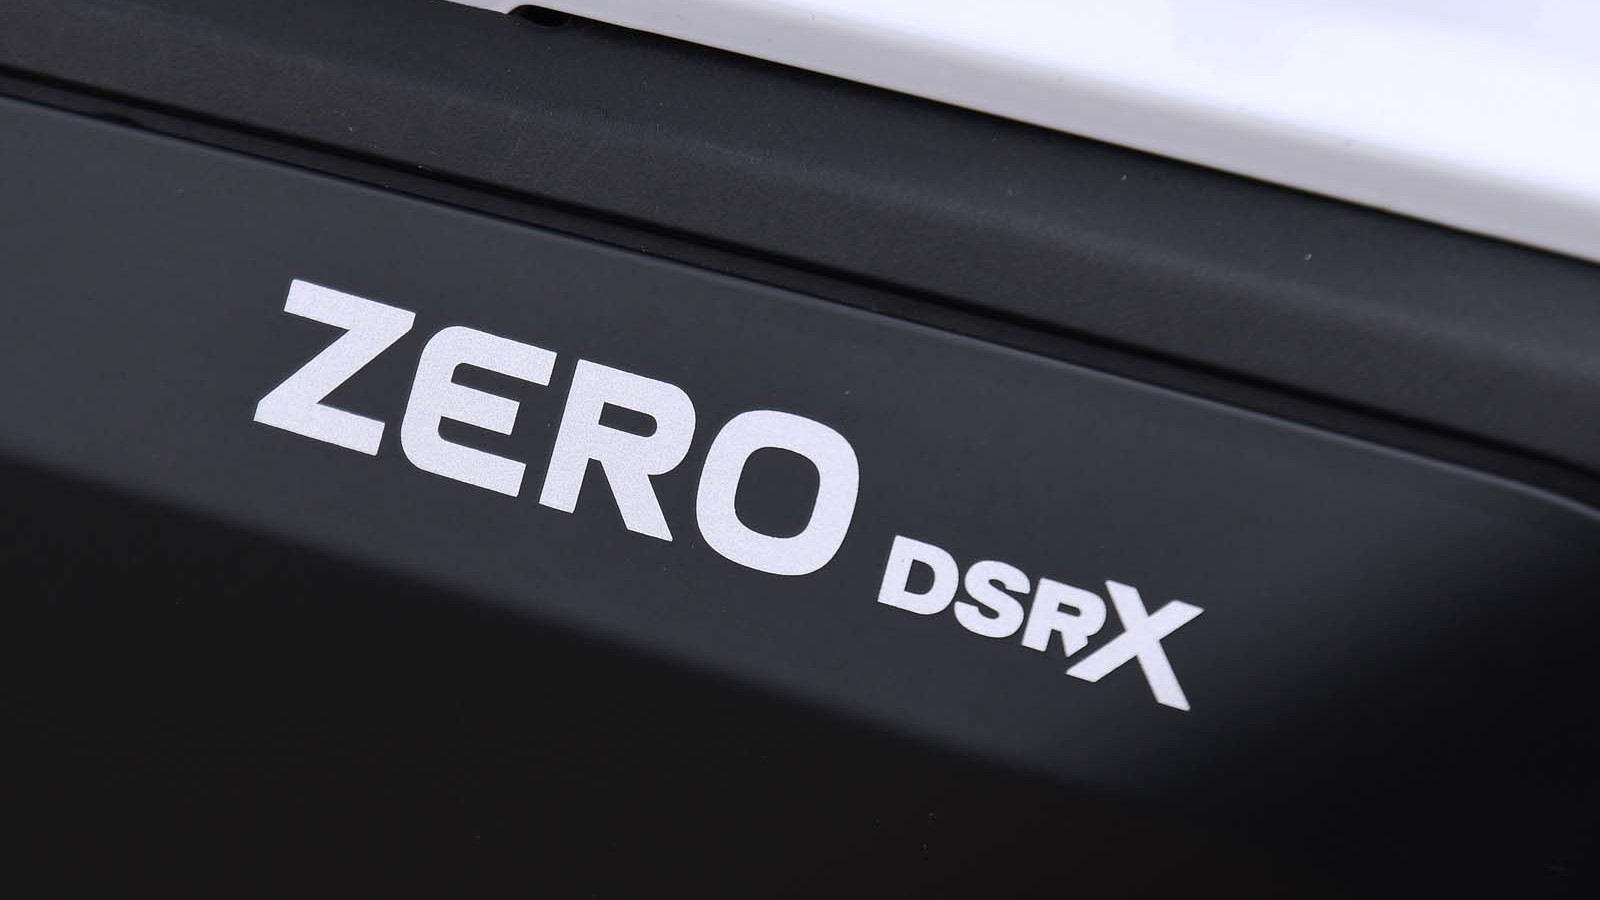 Zero DSR/X